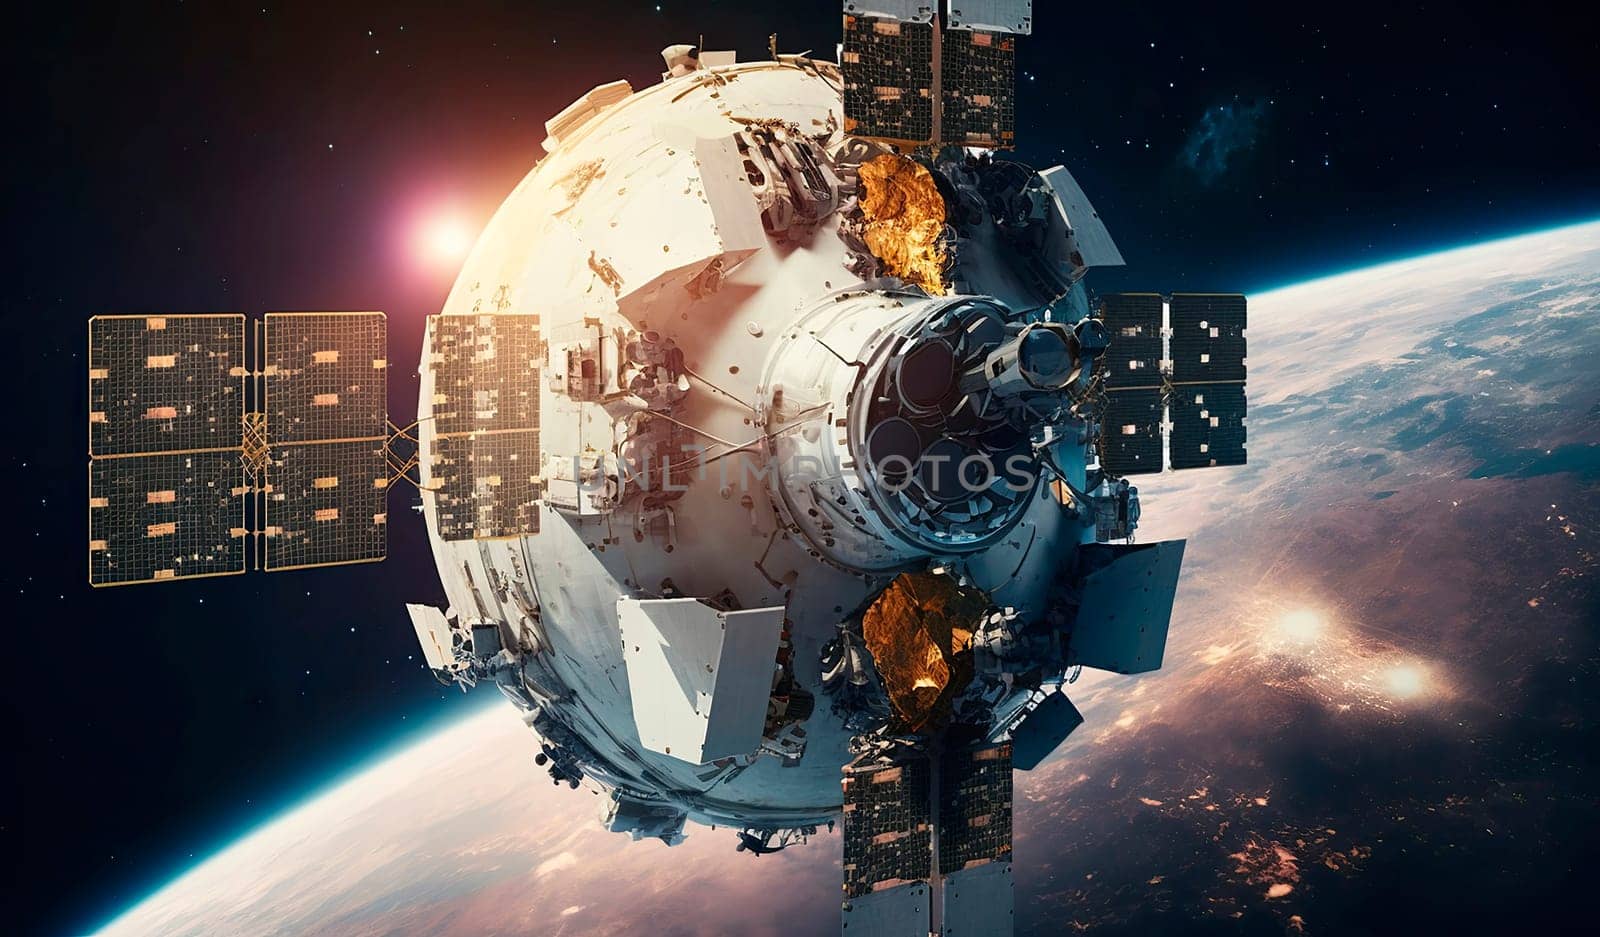 satellite in space. by yanadjana